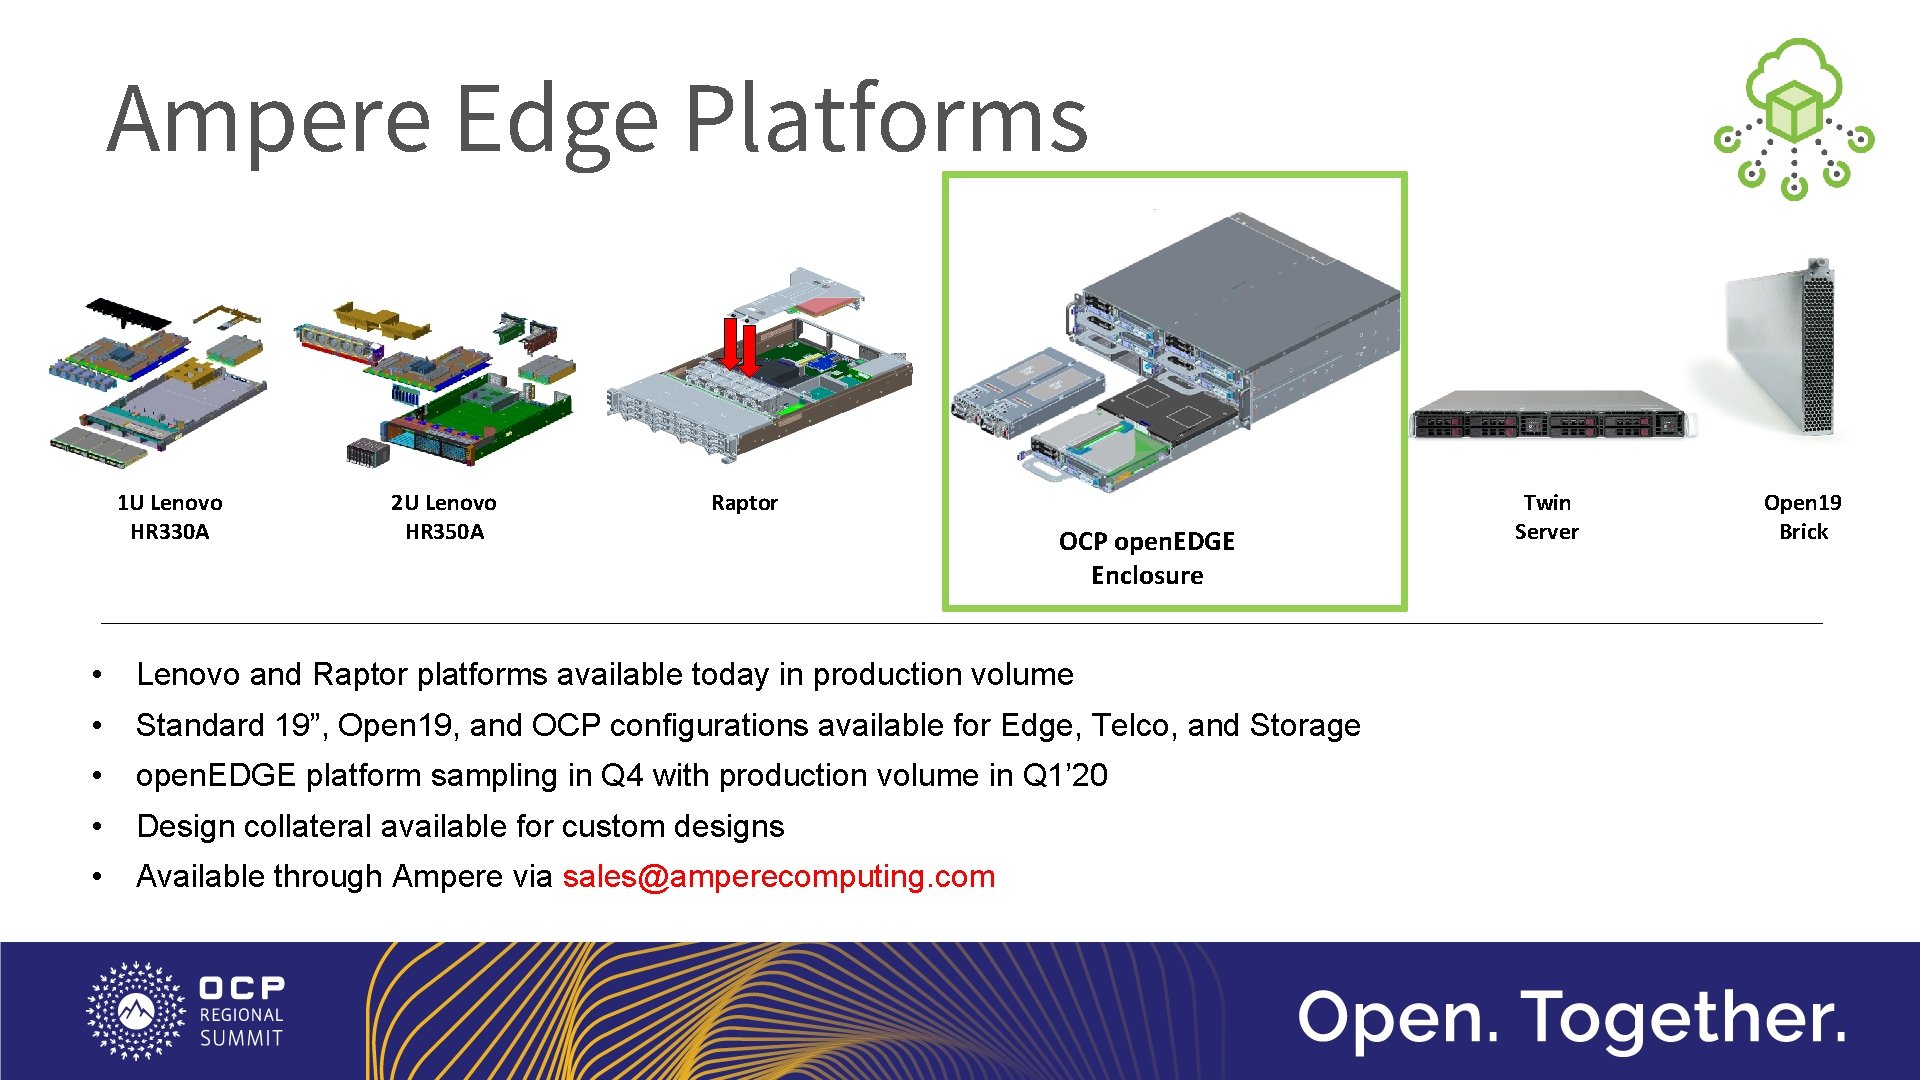 Ampere Edge Platforms 1 U Lenovo HR 330 A 2 U Lenovo HR 350